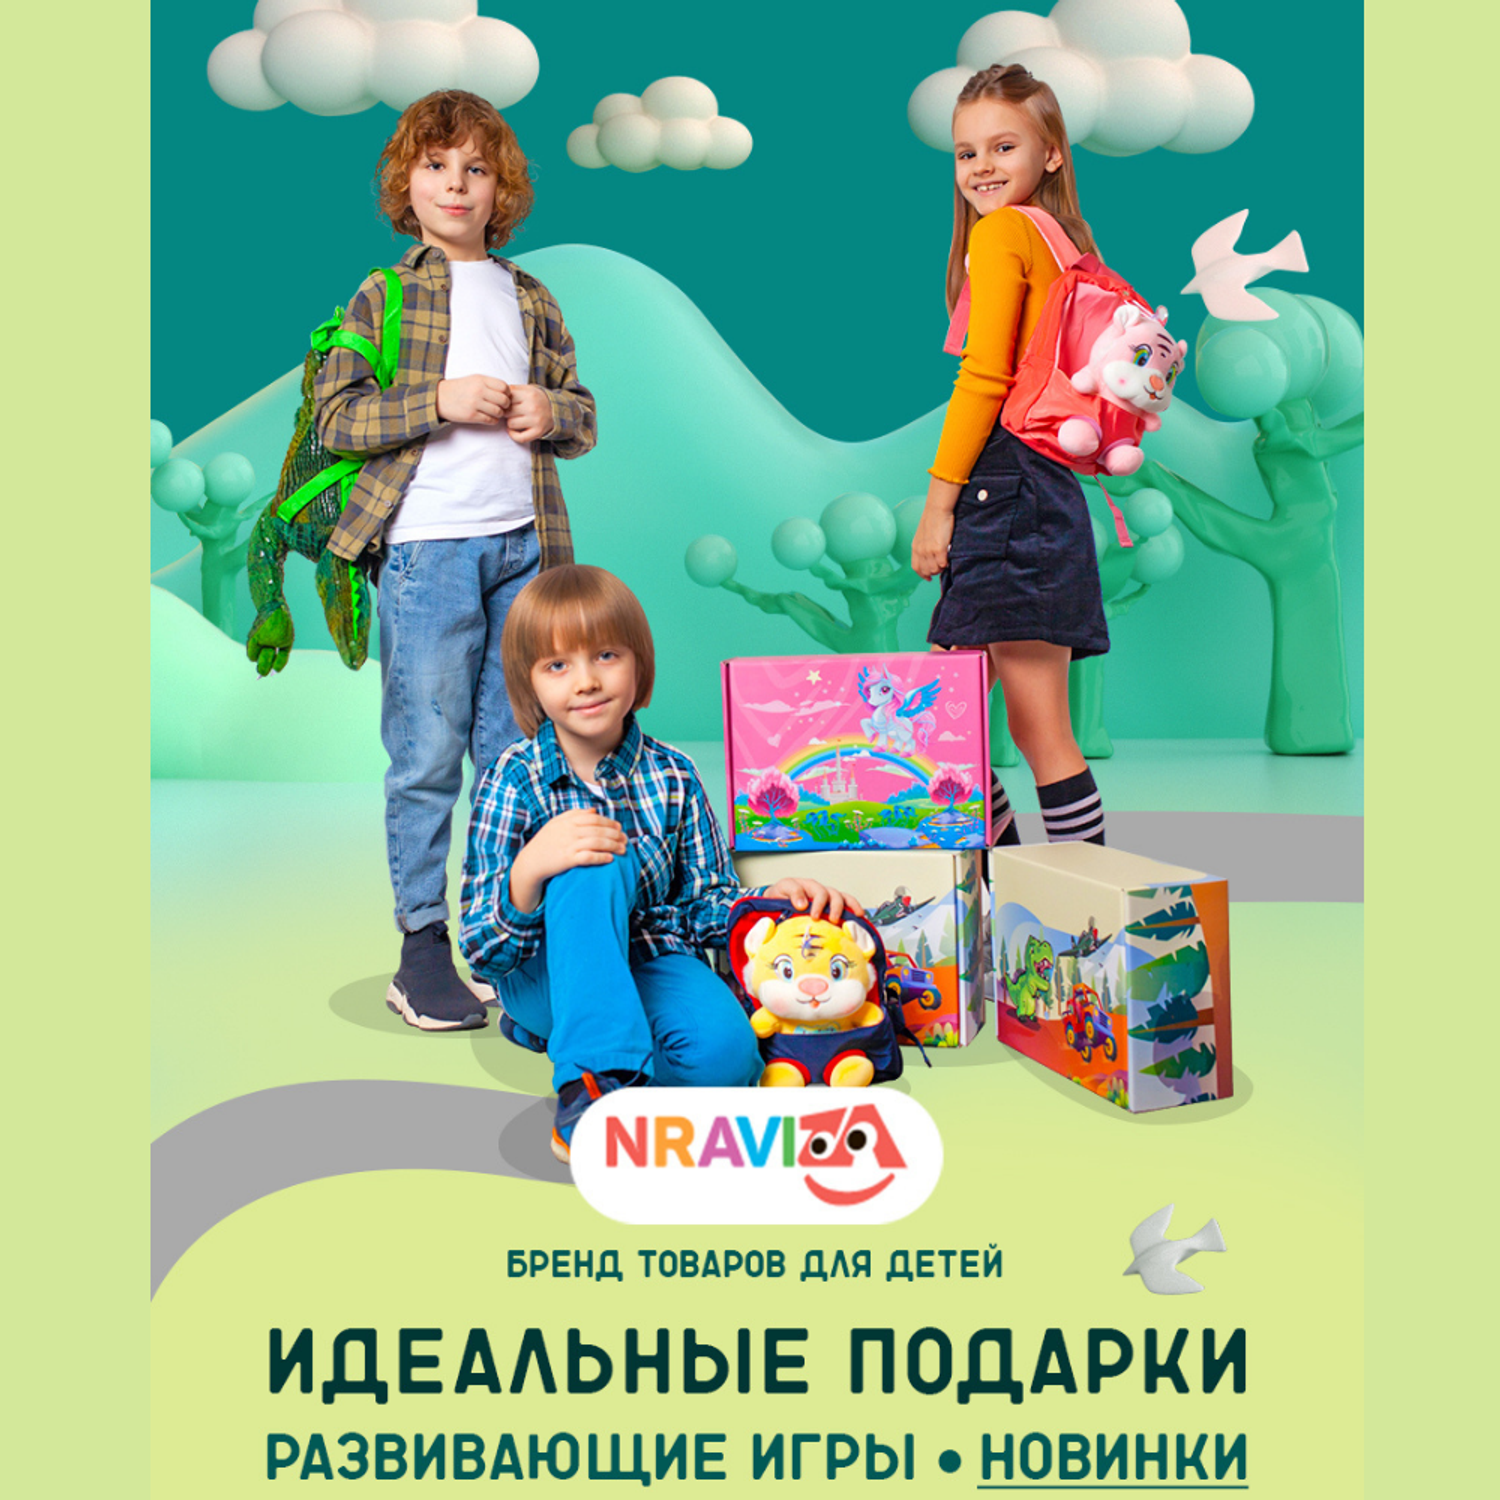 Подарочный набор аксессуаров NRAVIZA Детям Единорог для девочек 12 предметов - фото 30